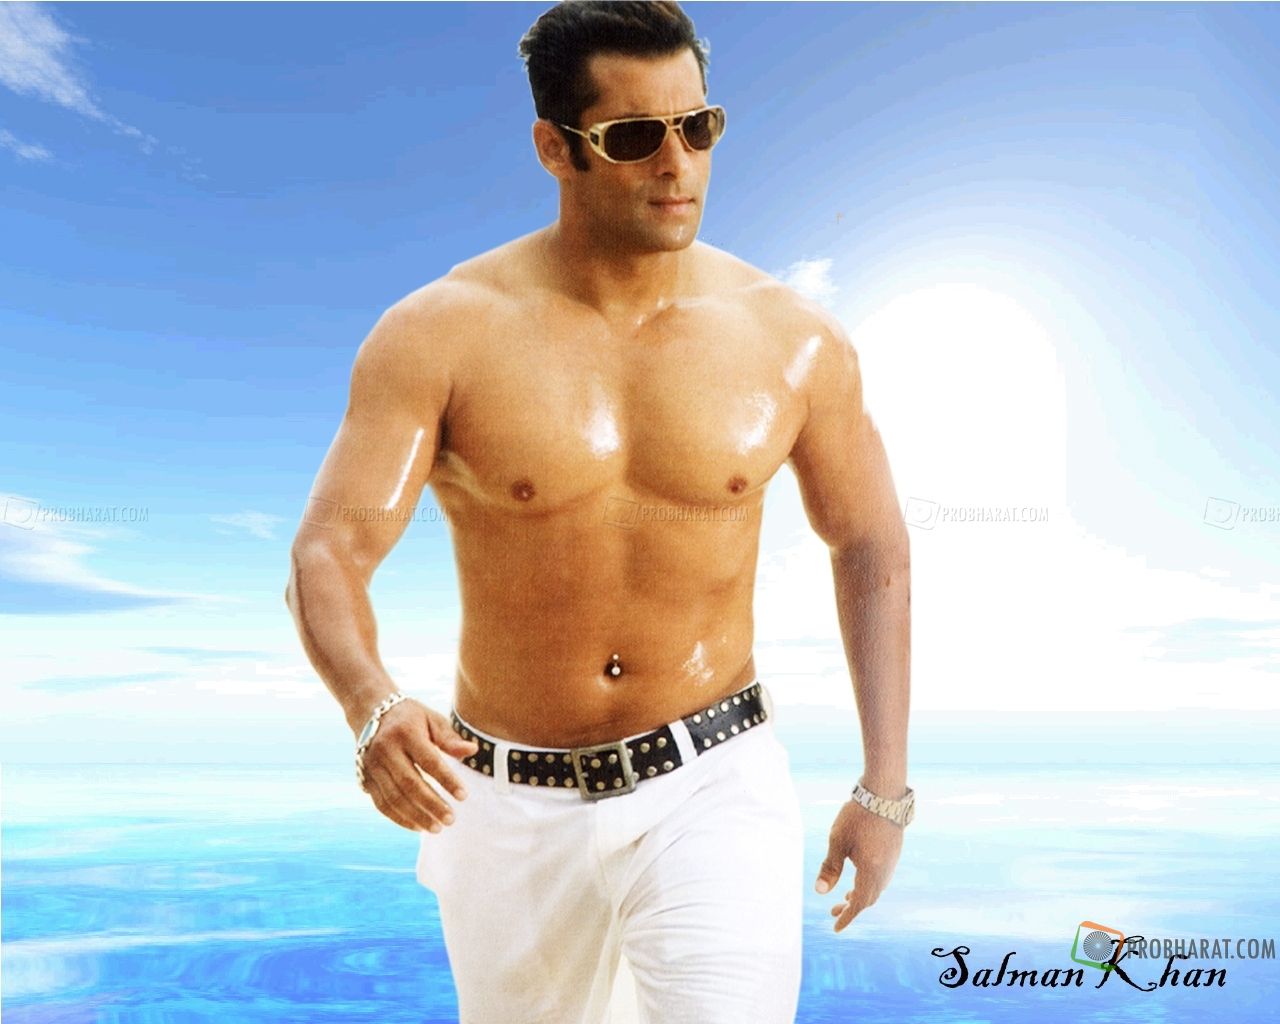 Salman Khan pictures, Salman Khan Wallpapers, Salman Khan Pics